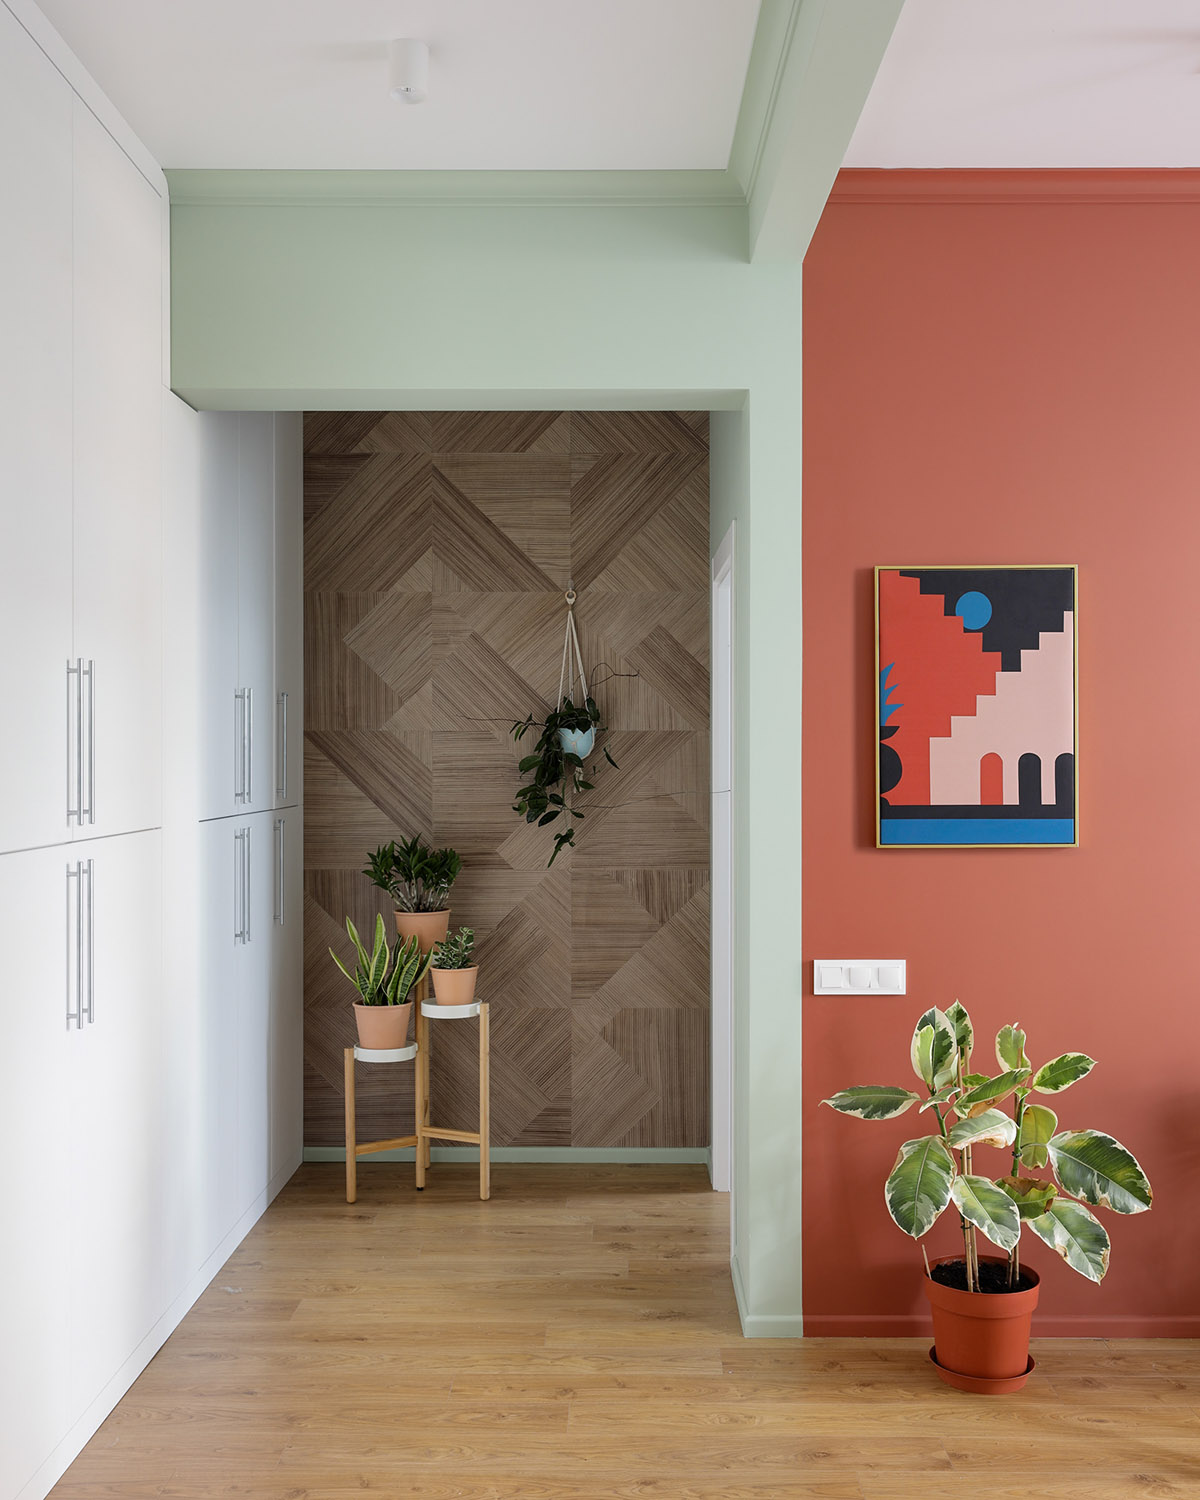 Ở cuối hành lang, một bức tường gỗ thân thiện, làm cho một phông nền phù hợp cho một loạt các chậu cây trồng trong nhà.